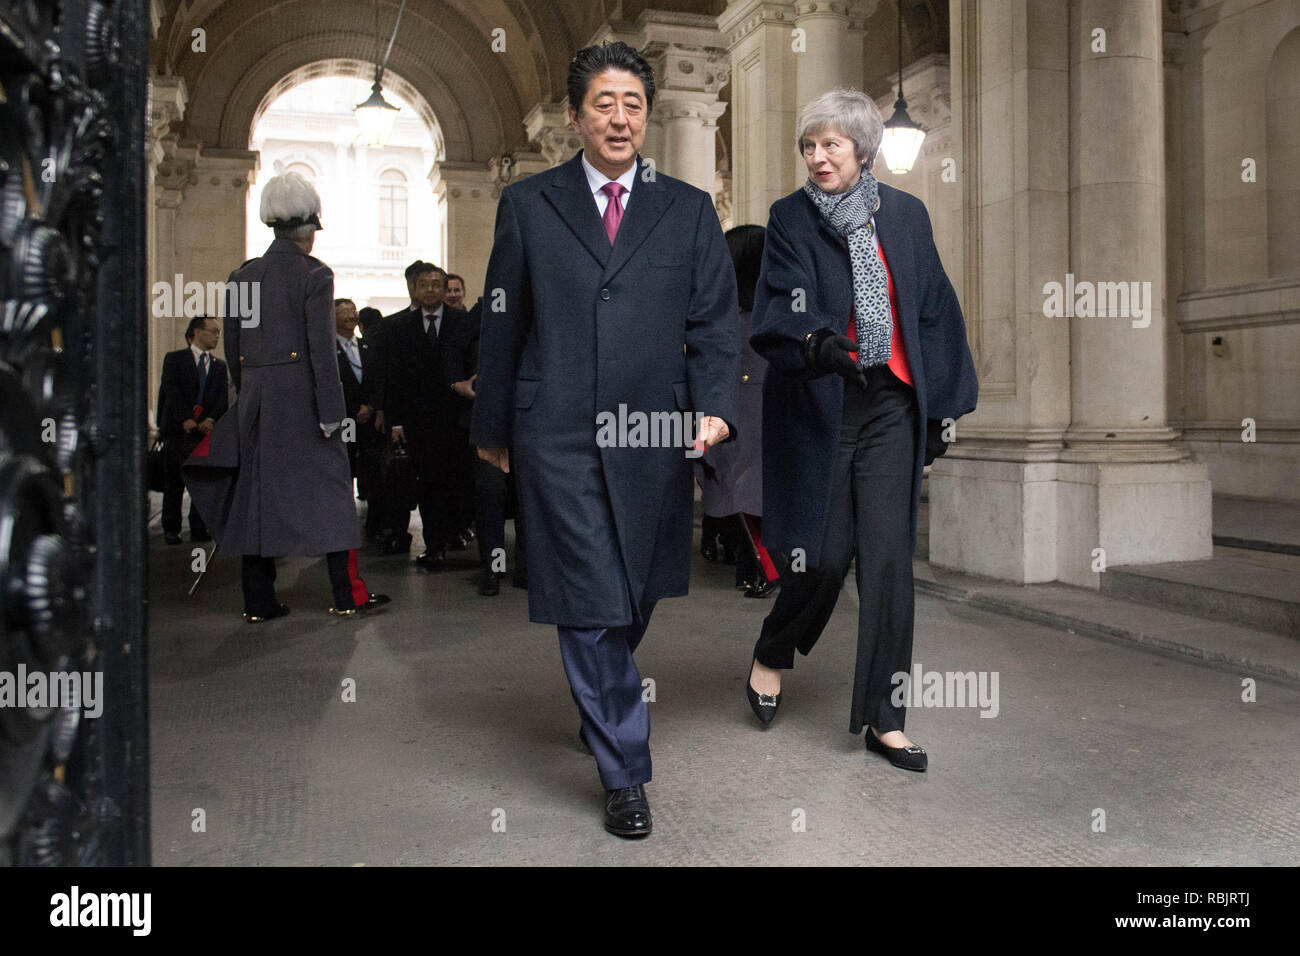 Premier ministre Theresa mai et le Premier ministre japonais Shinzo Abe arrivant à Downing Street, Londres la veille d'une réunion bilatérale. Banque D'Images